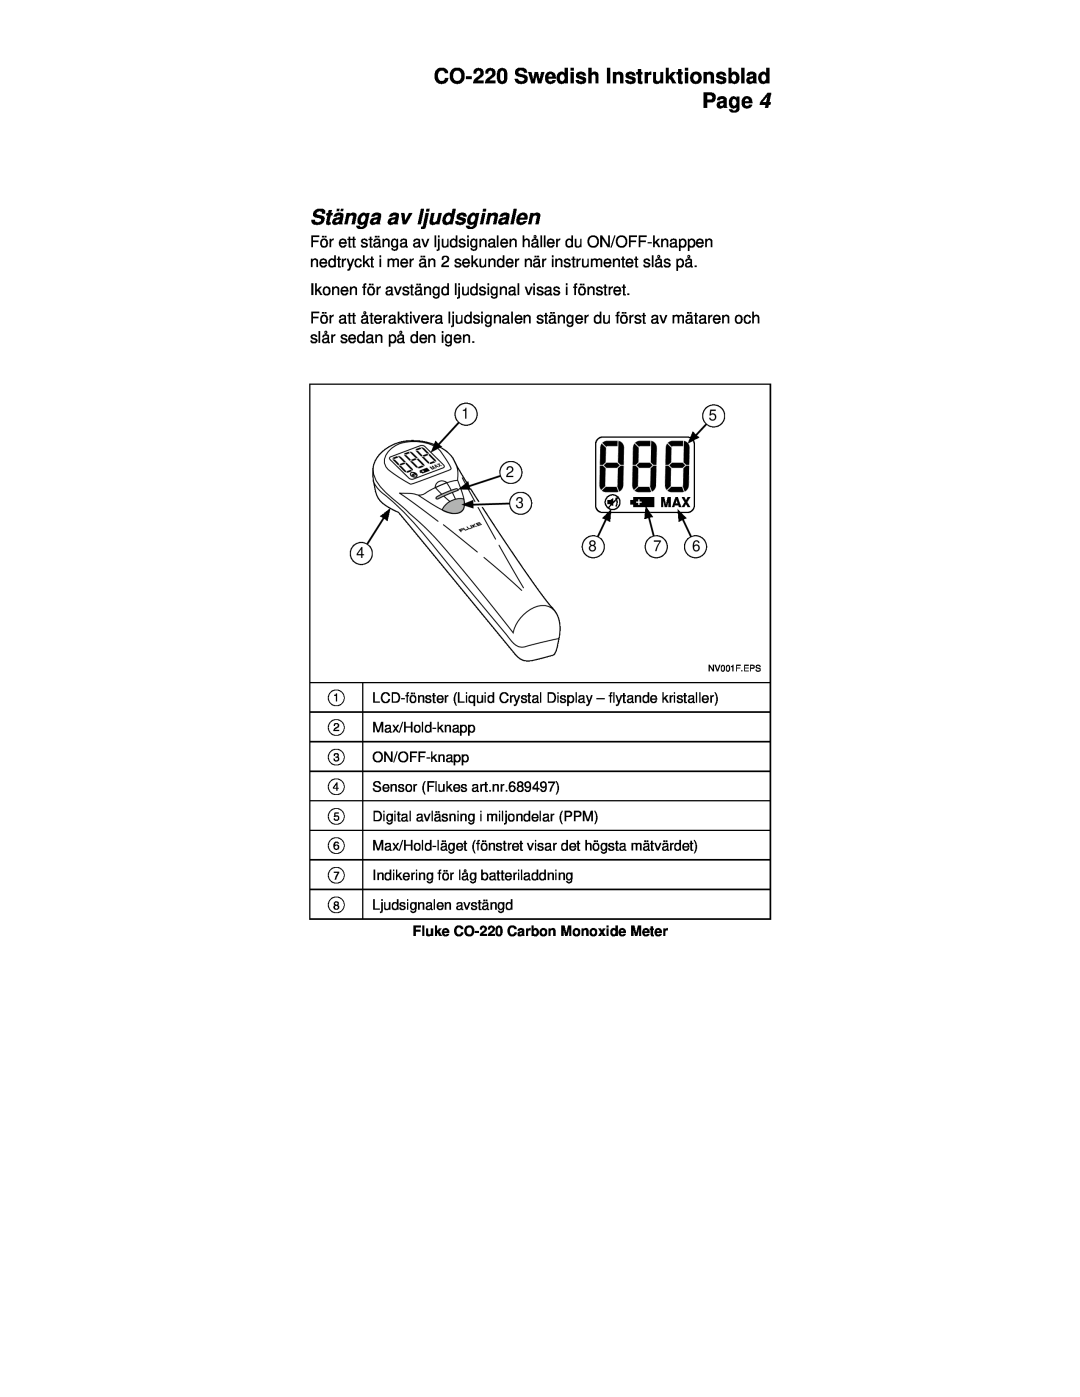 Fluke manual Stänga av ljudsginalen, CO-220Swedish Instruktionsblad Page 